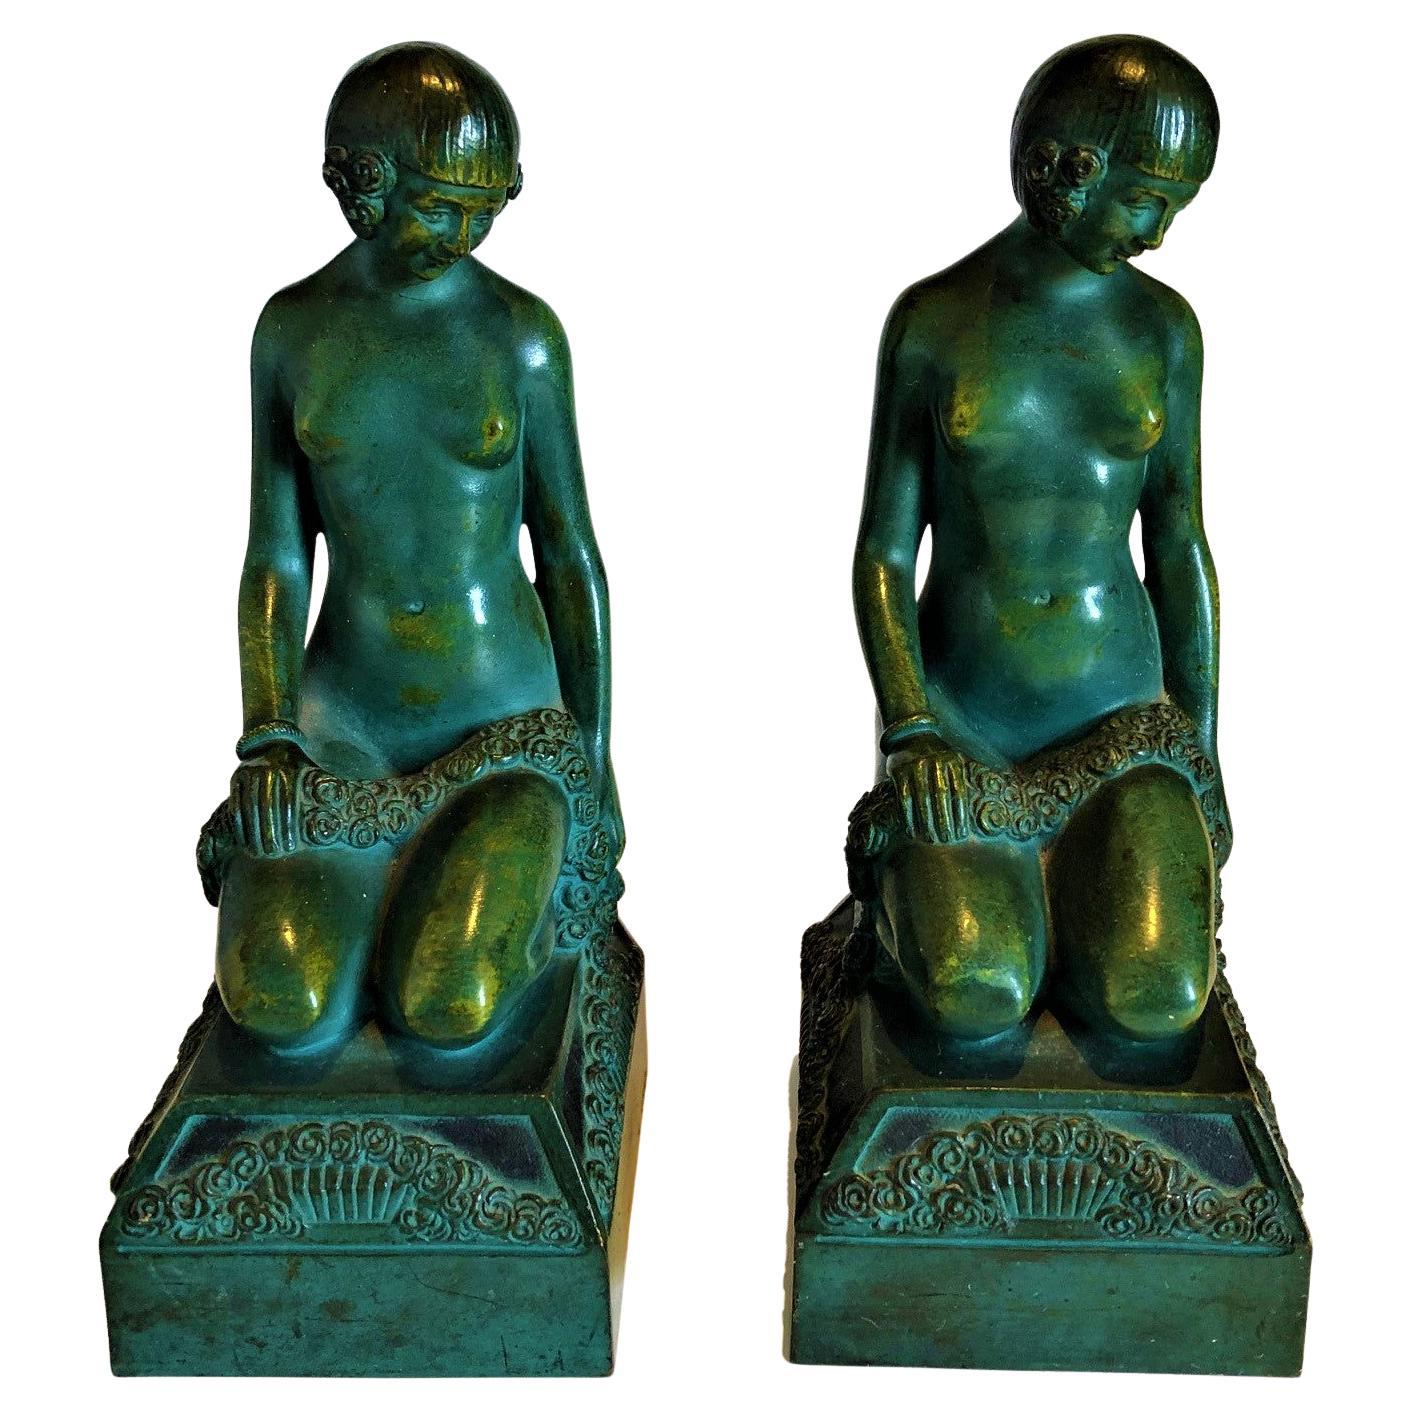 Serre-livres Art Déco en bronze représentant une femme érotique nue, c. France 1925, signé Scribe